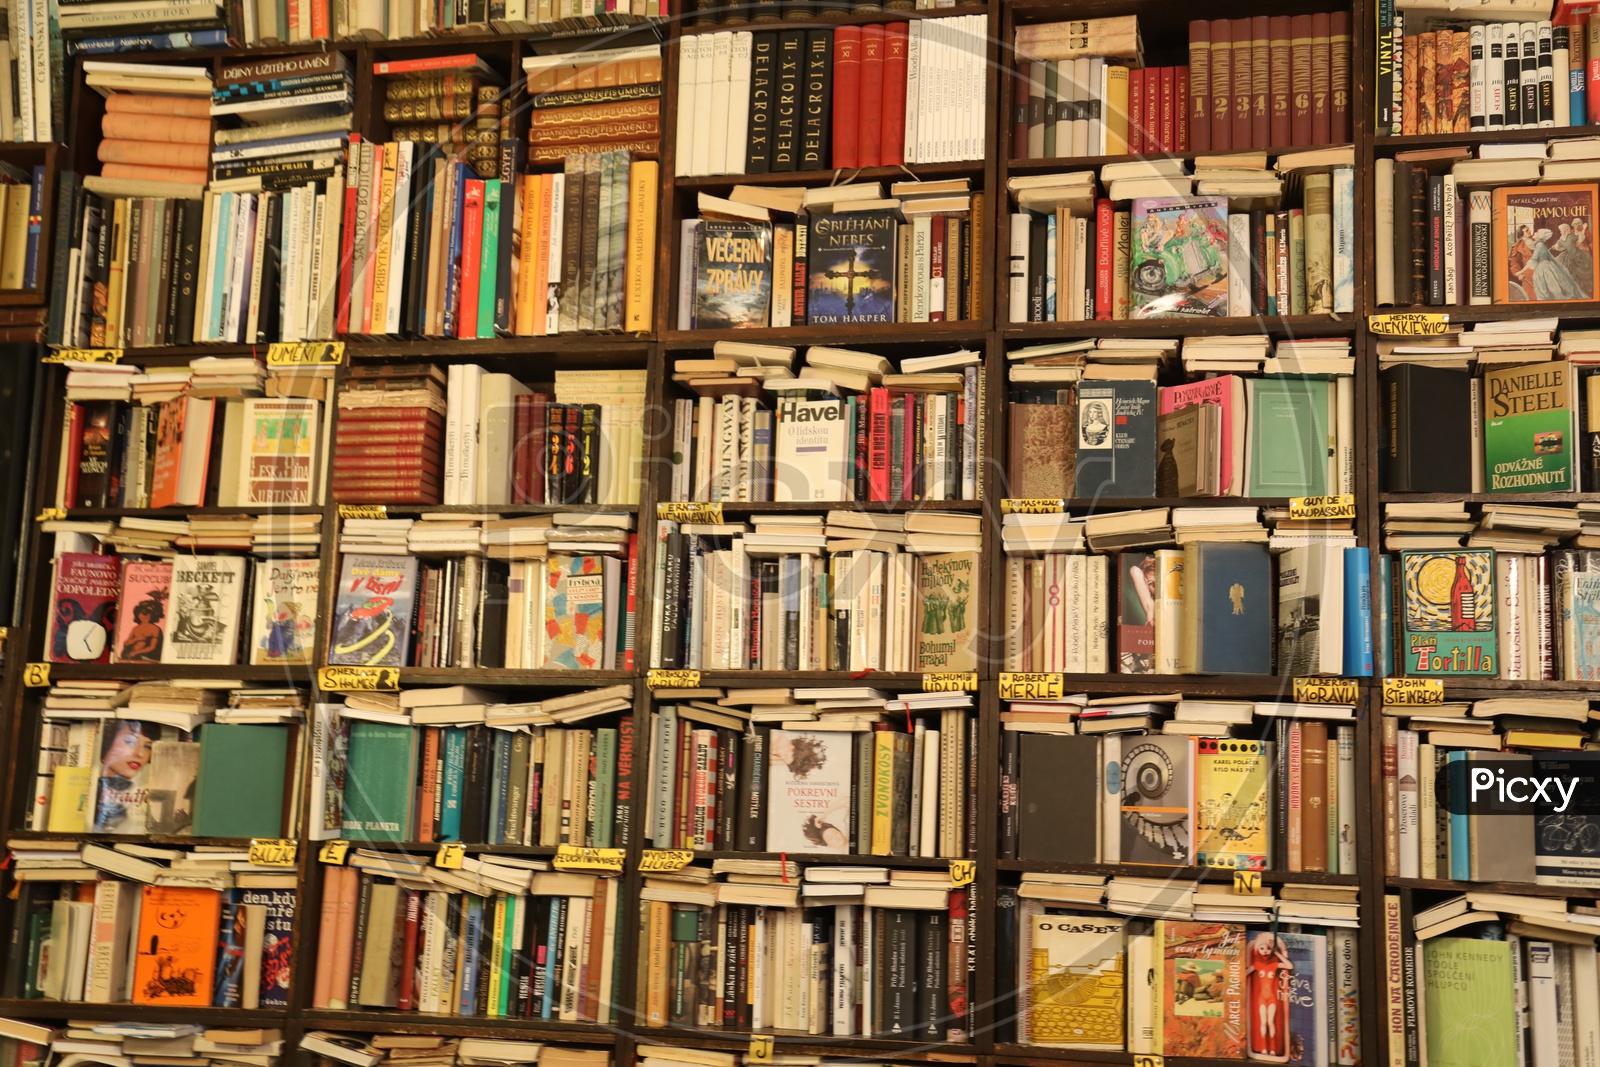 Books arranged in shelves